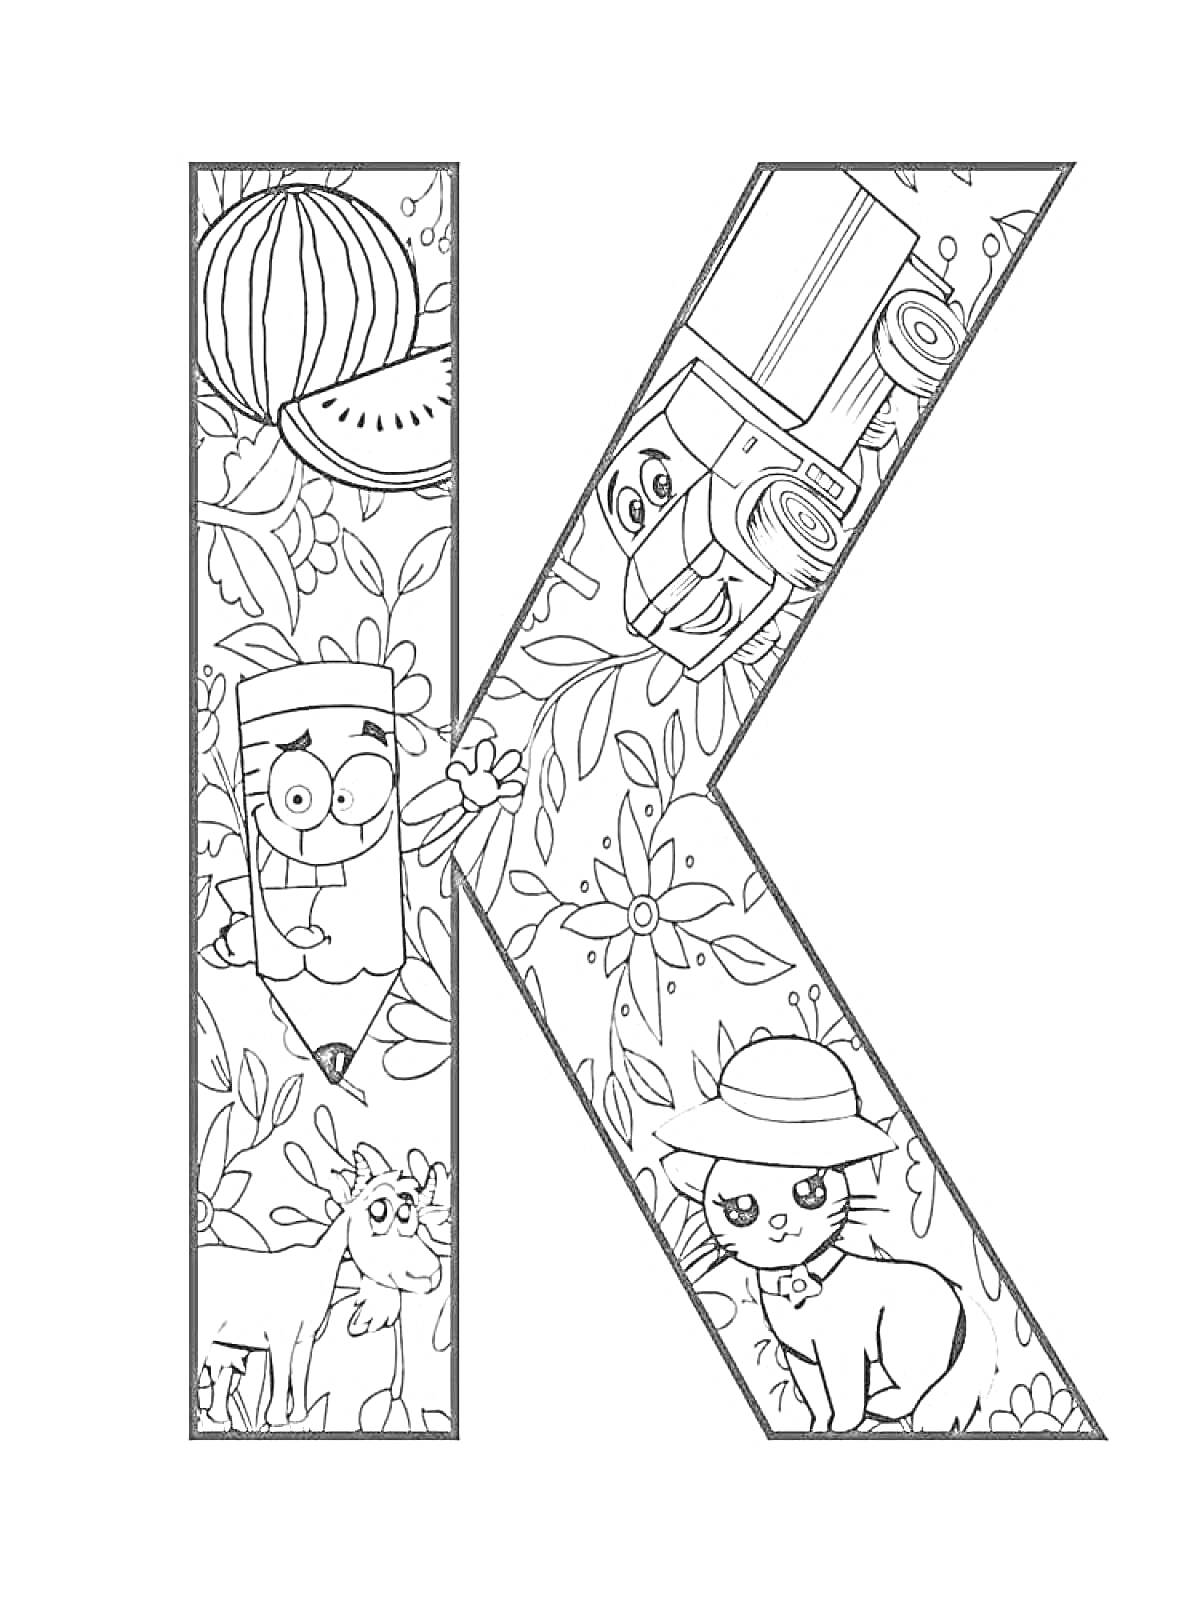 Раскраска Раскраска с буквой К, включает арбуз, мобильный телефон, мультипликационный персонаж, цветы, лошадь, котенка